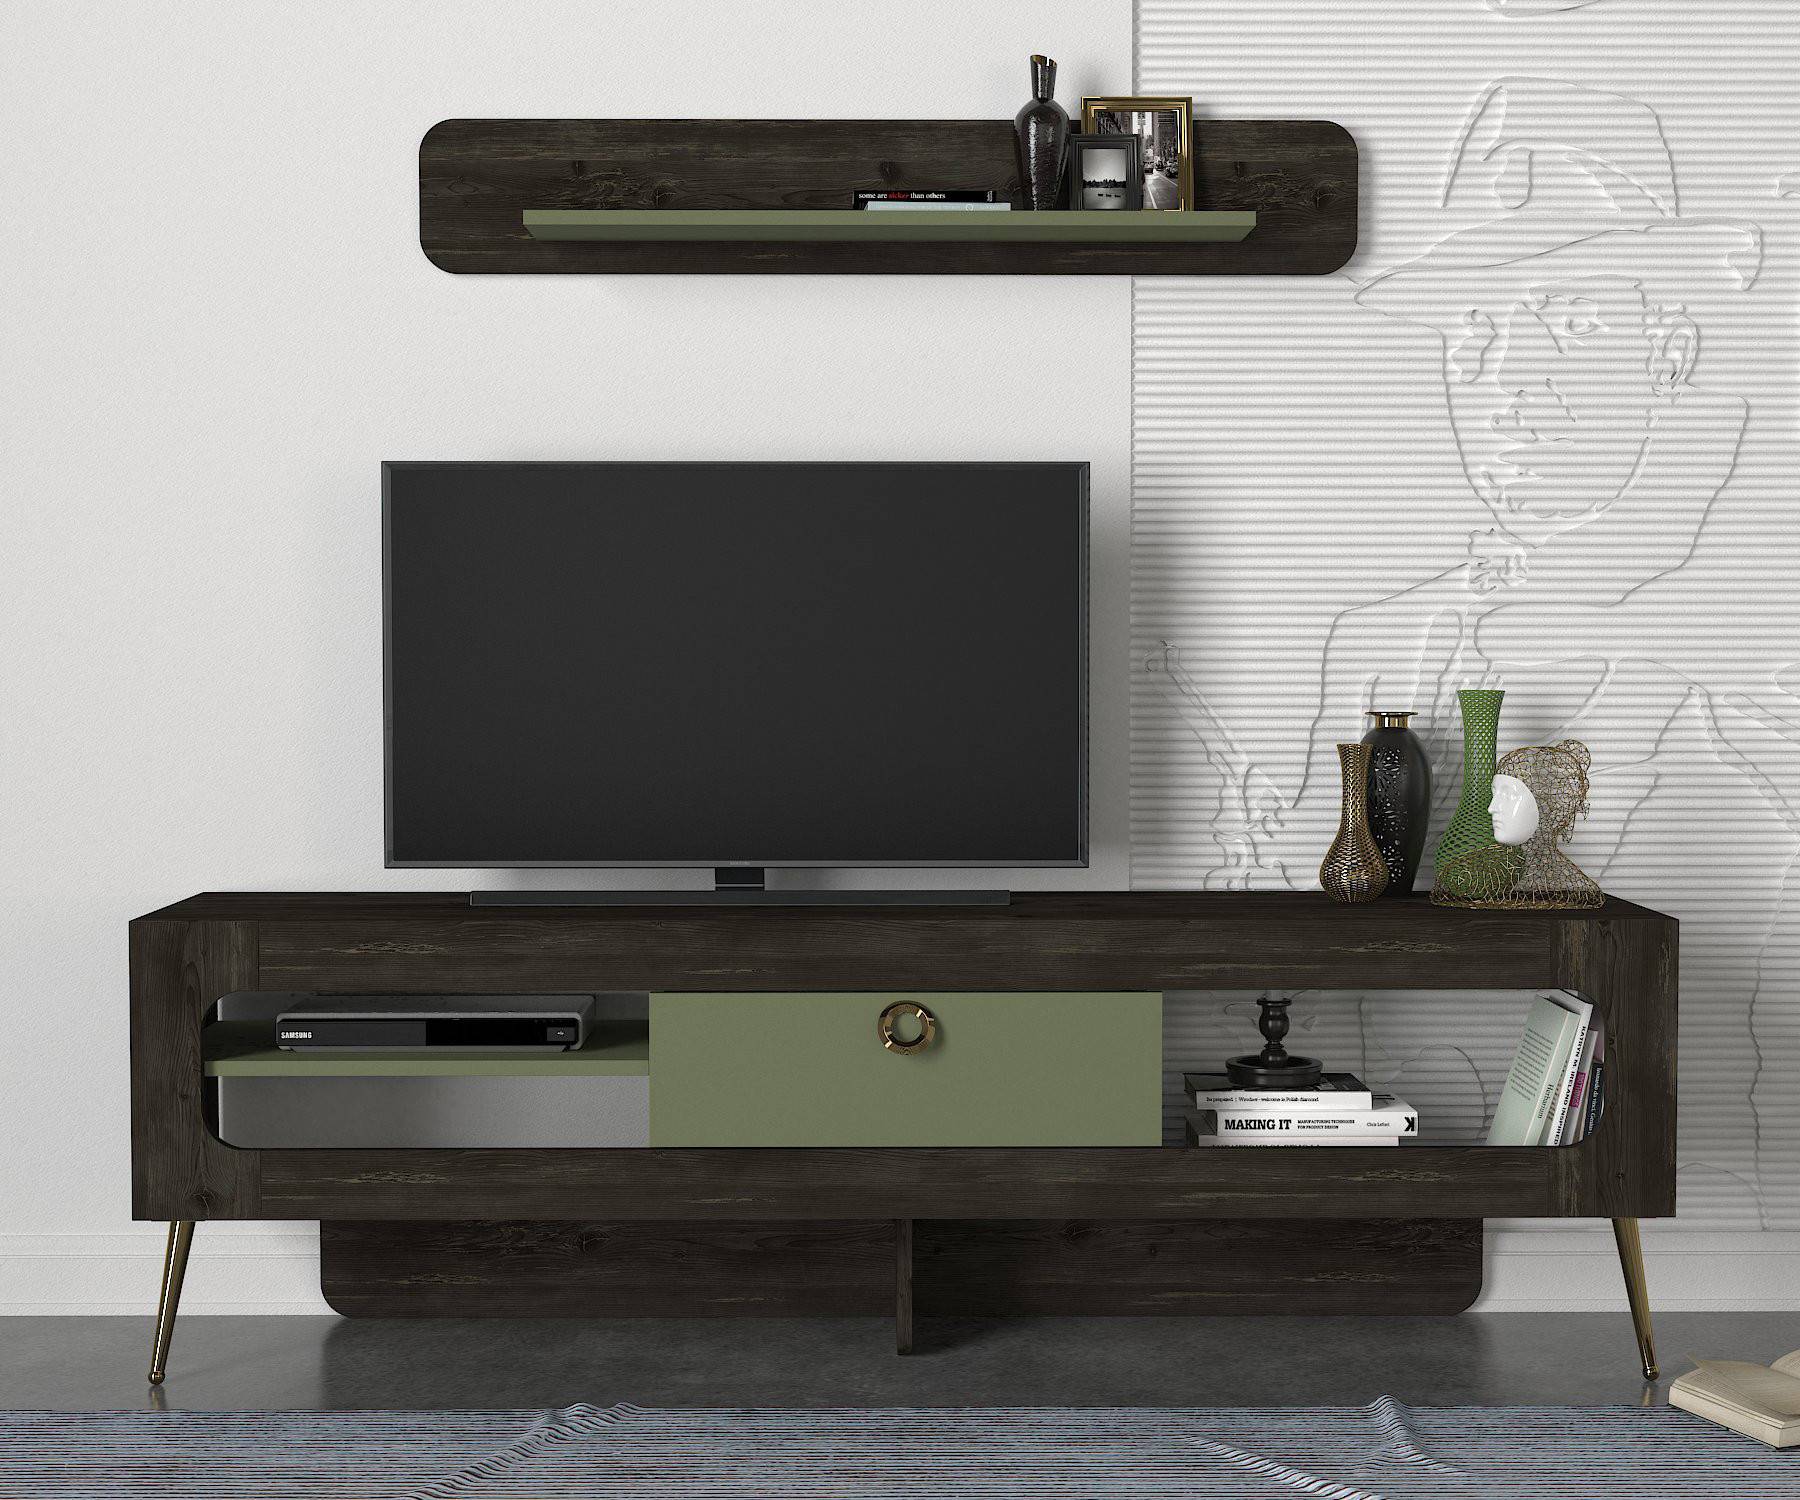 Donaldo donker hout en groen TV-meubel en wandplank